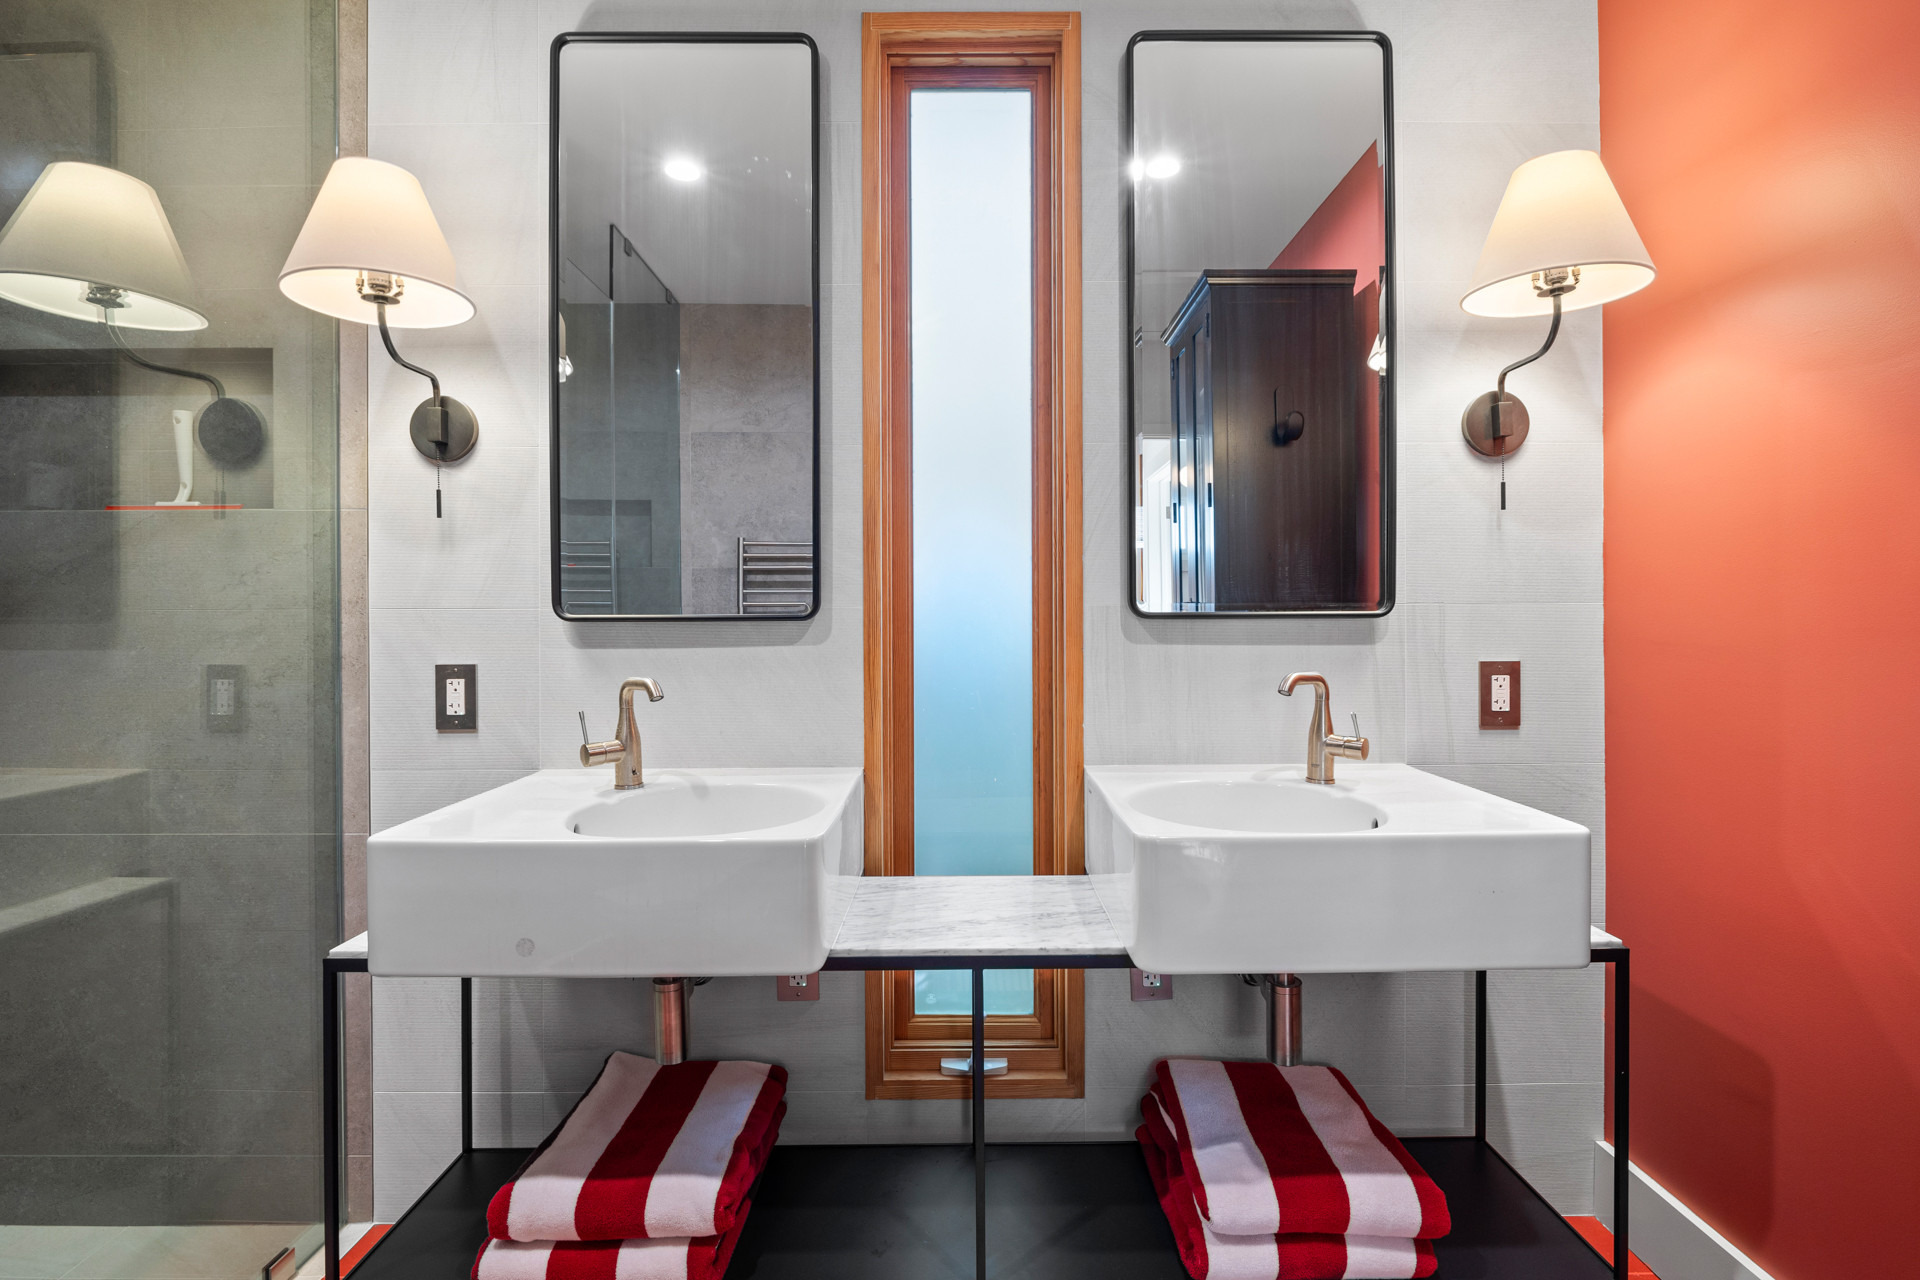 Van Nuys / Bathroom Remodel